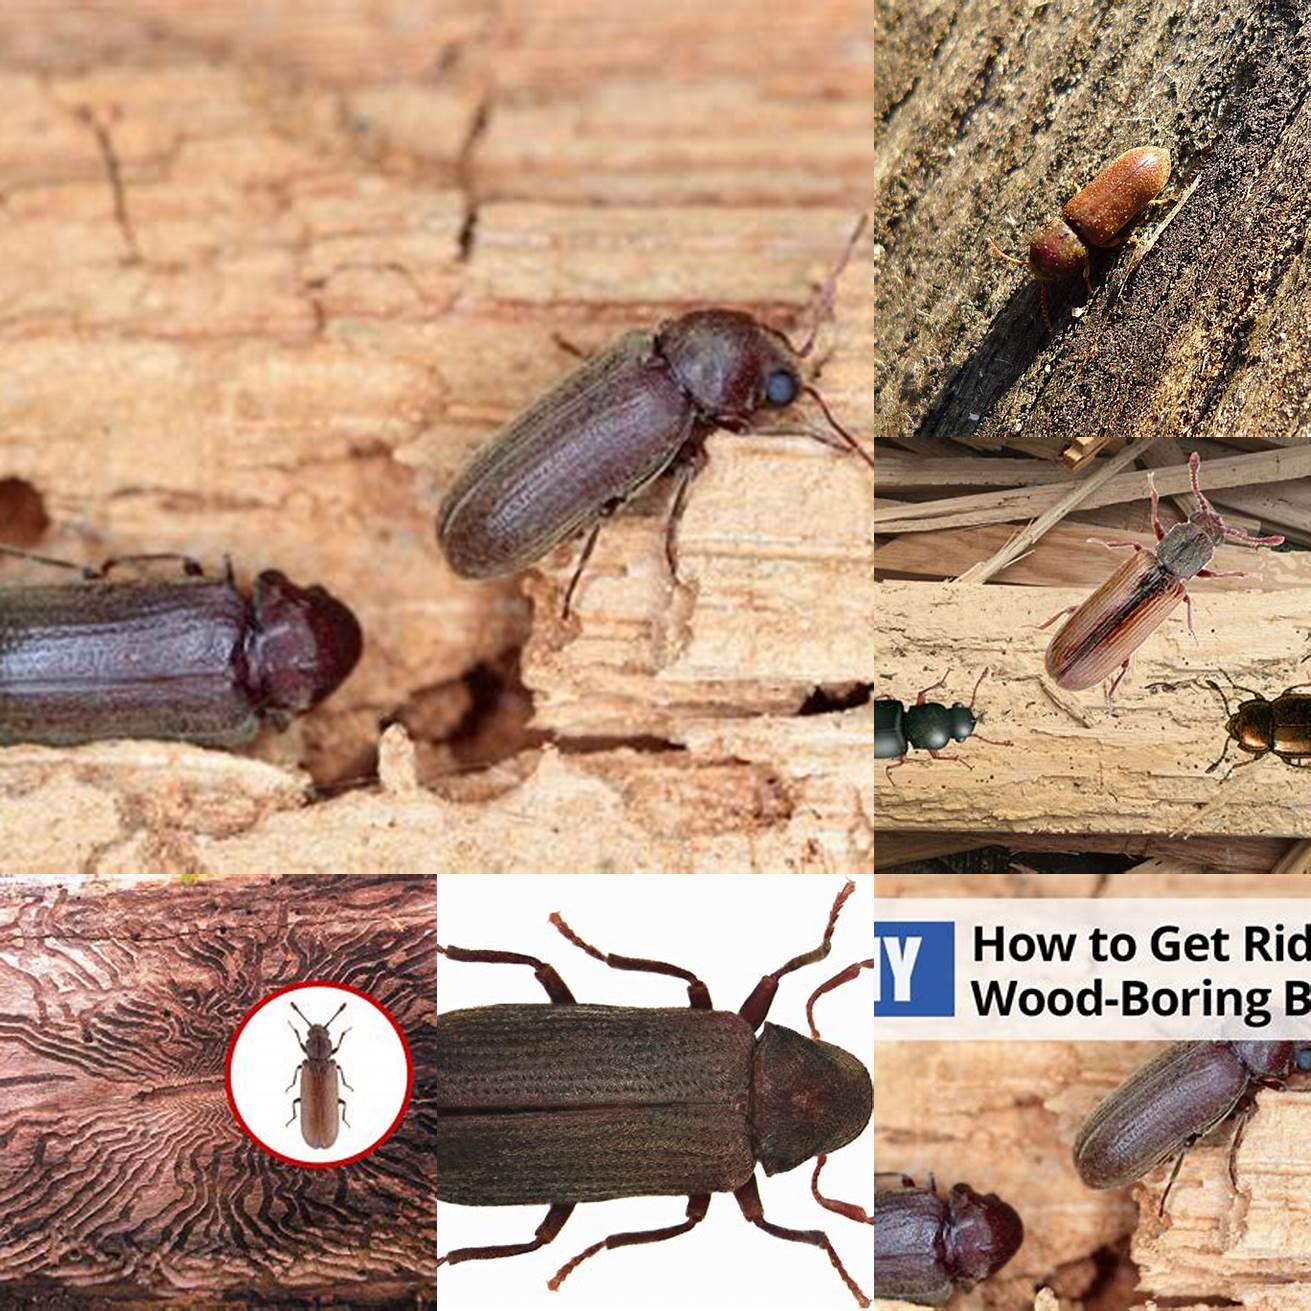 Wood-boring beetle